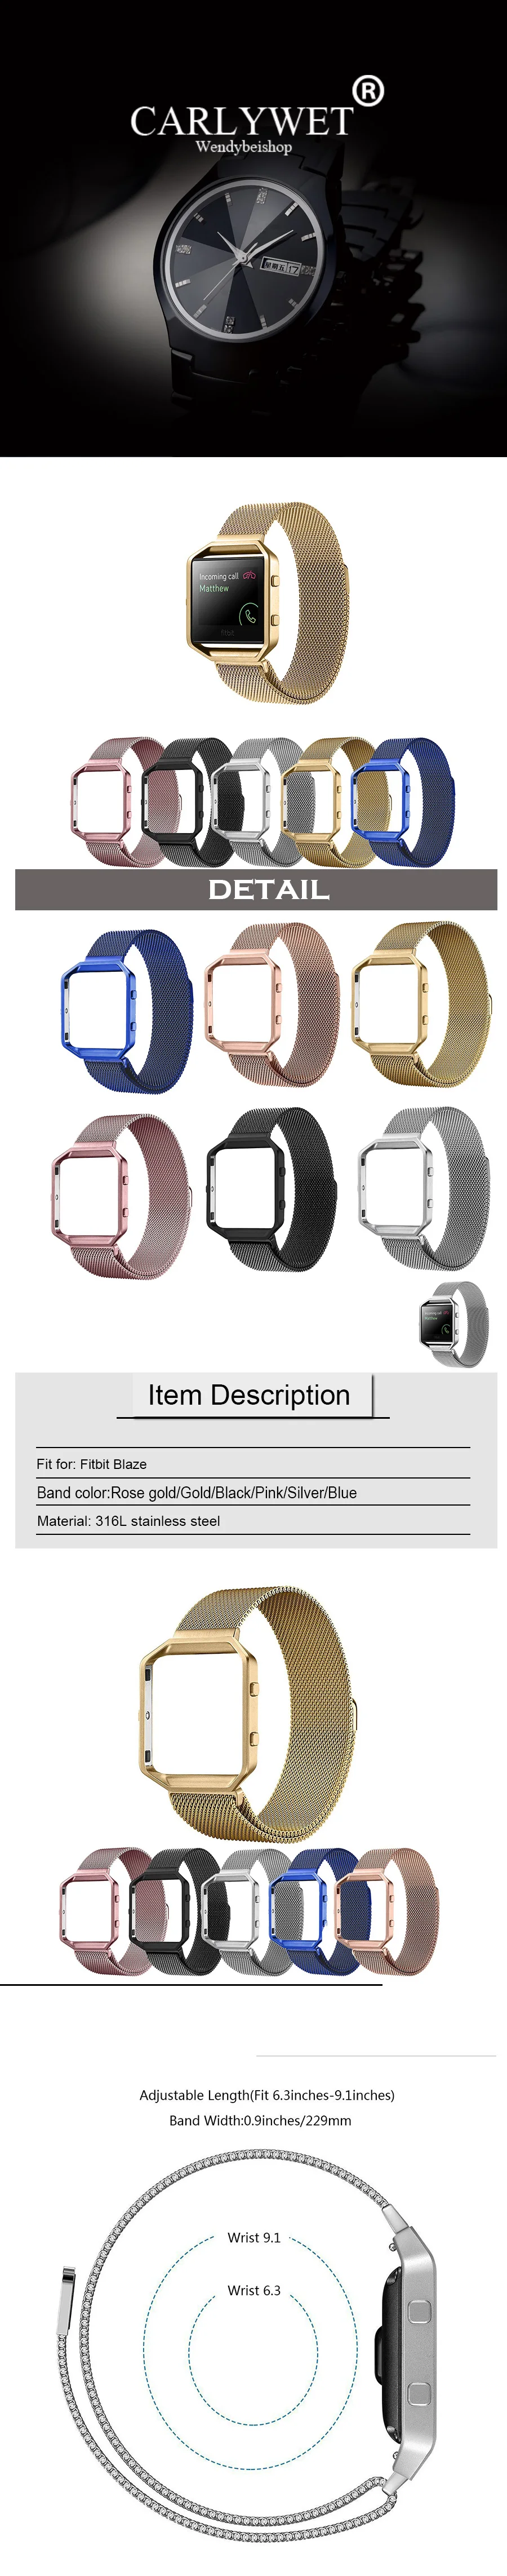 CARLYWET оптовая продажа Миланского Сталь наручные часы Группа ремень Магнитная застежка с чехол металлический каркас для Fitbit Blaze 23 Часы